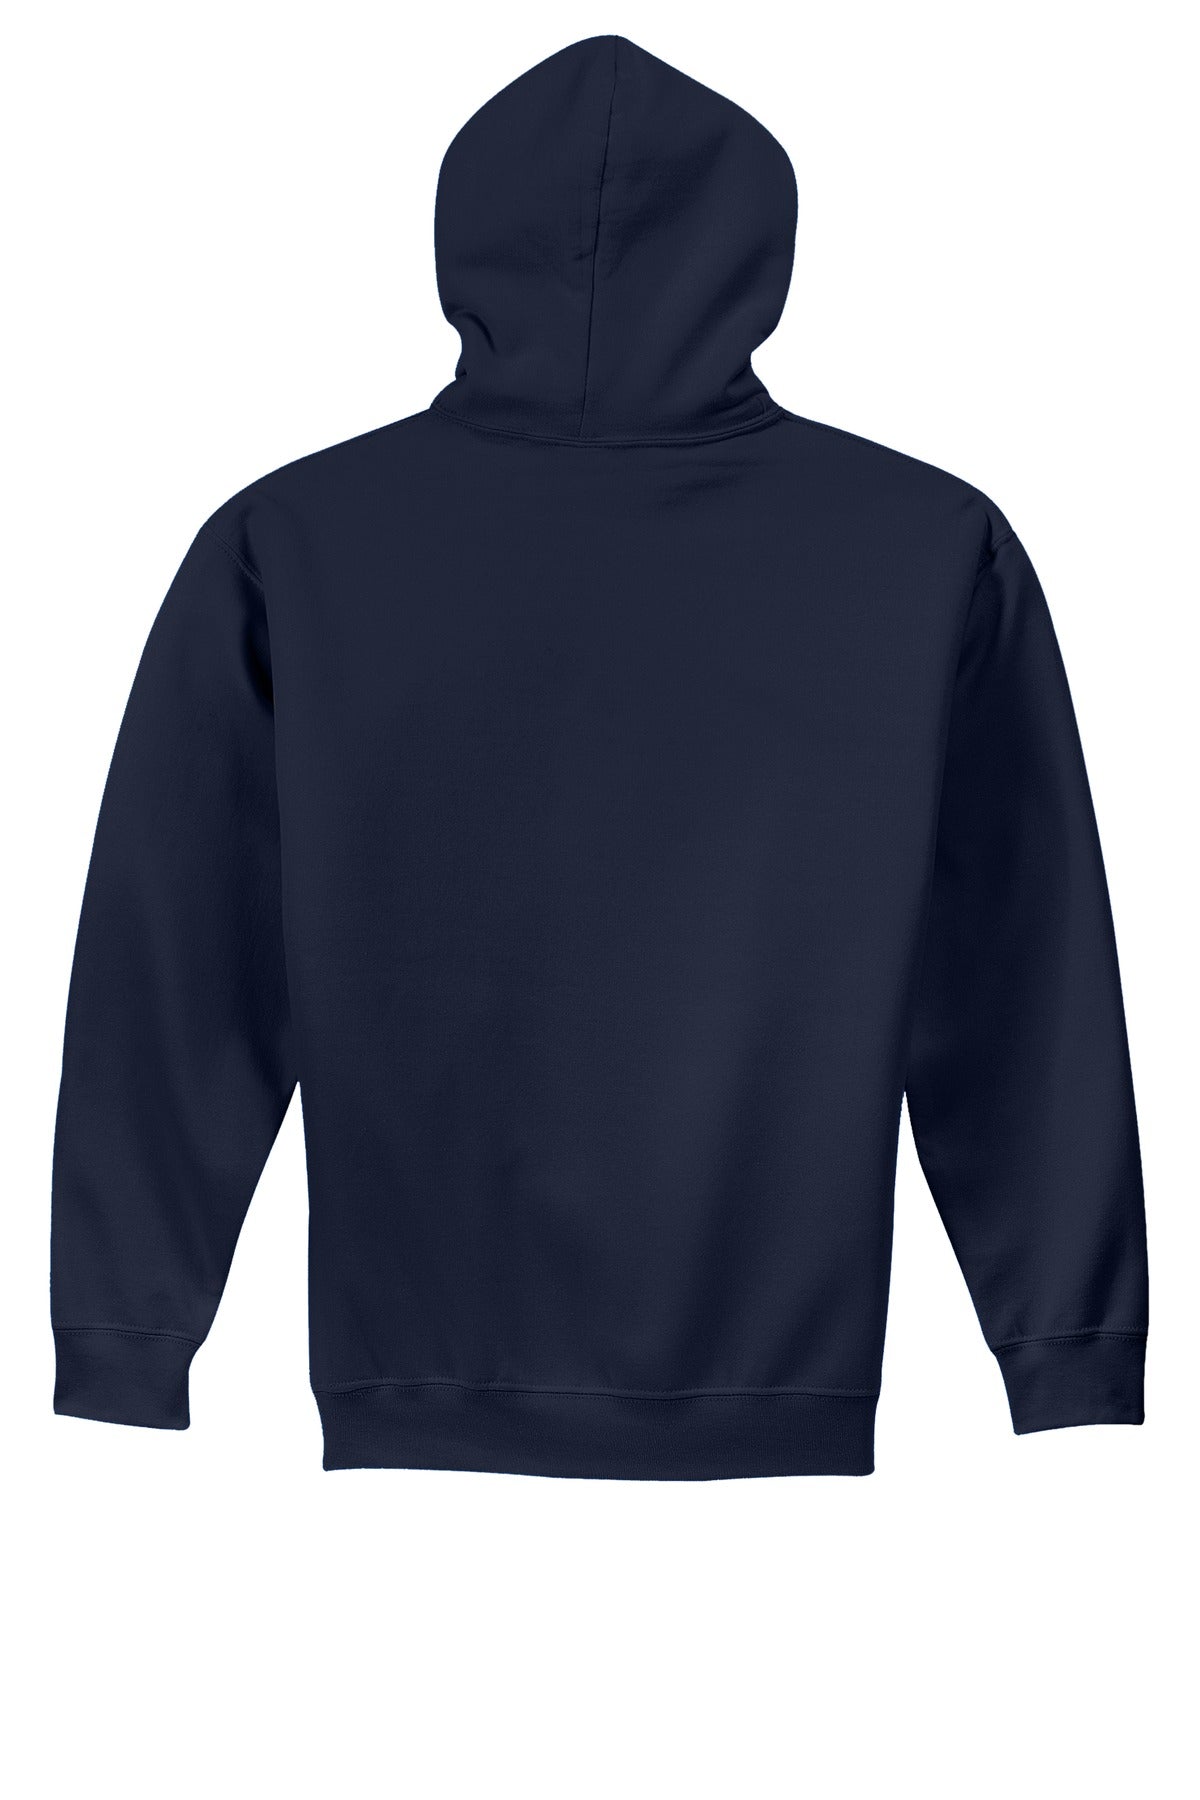 Gildan® - Youth Heavy Blend™ Hooded Sweatshirt. 18500B [Navy] - DFW Impression